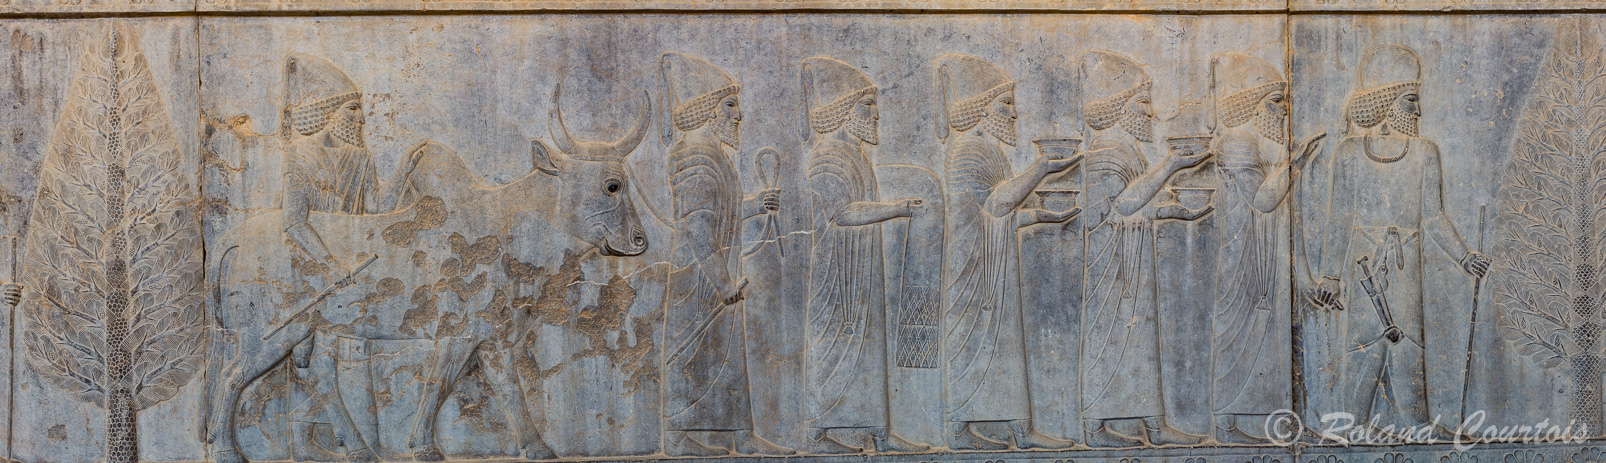 Persepolis :  Frise des Tributaires, Les Babyloniens, avec buffle, apportent des vêtements et de la vaisselle.